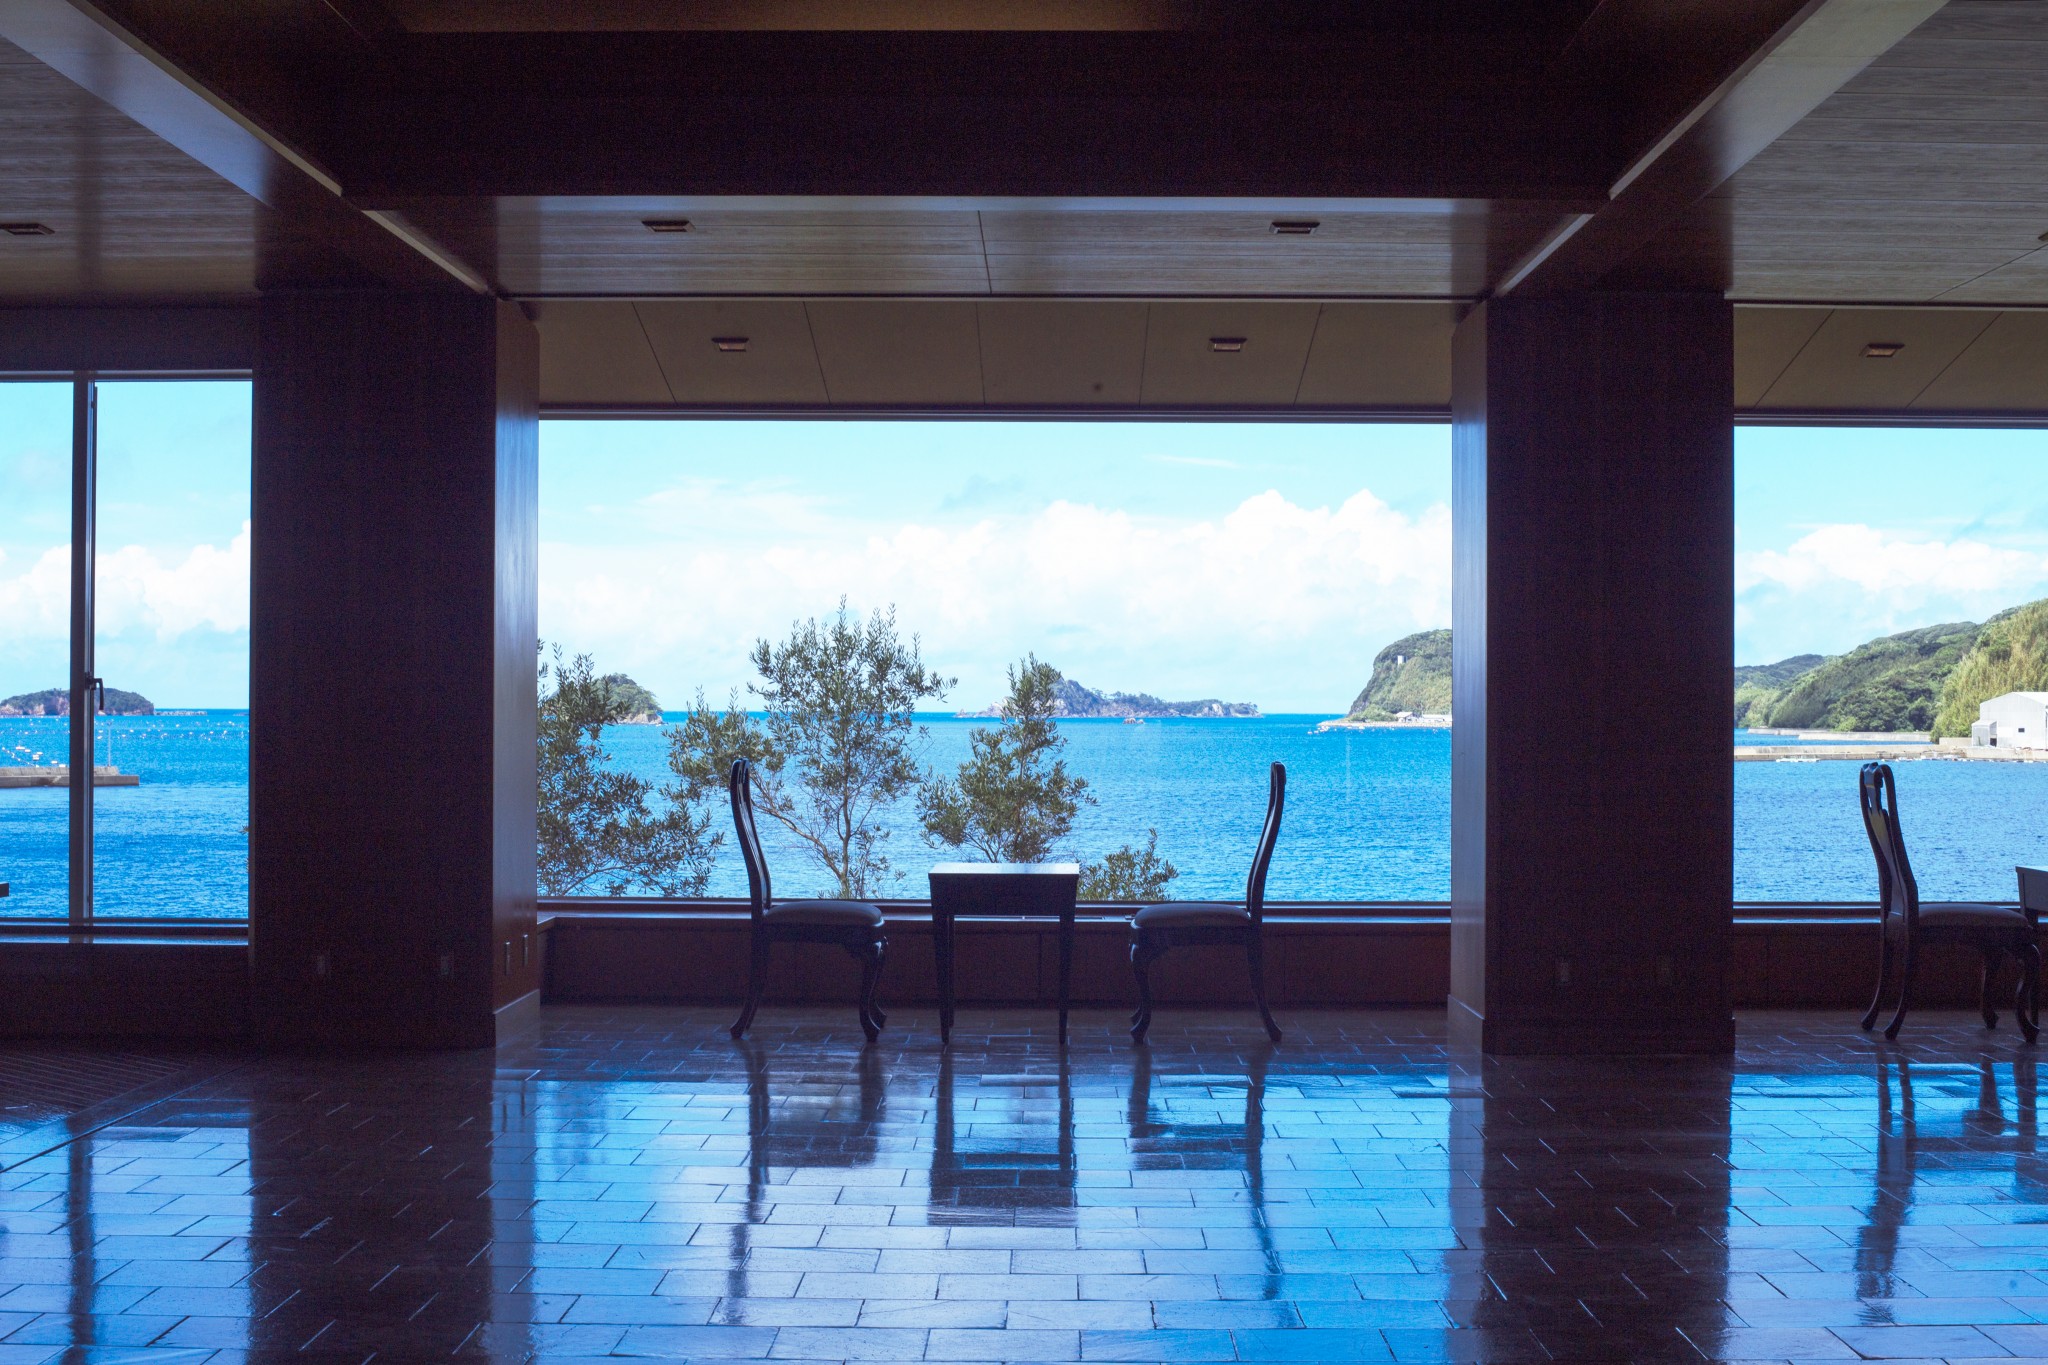 エントランスのドアが開くと湯本湾が視界いっぱいに現れる。透明度の高い海や静かな漁村の風景を眺めるだけで心が澄み渡る。